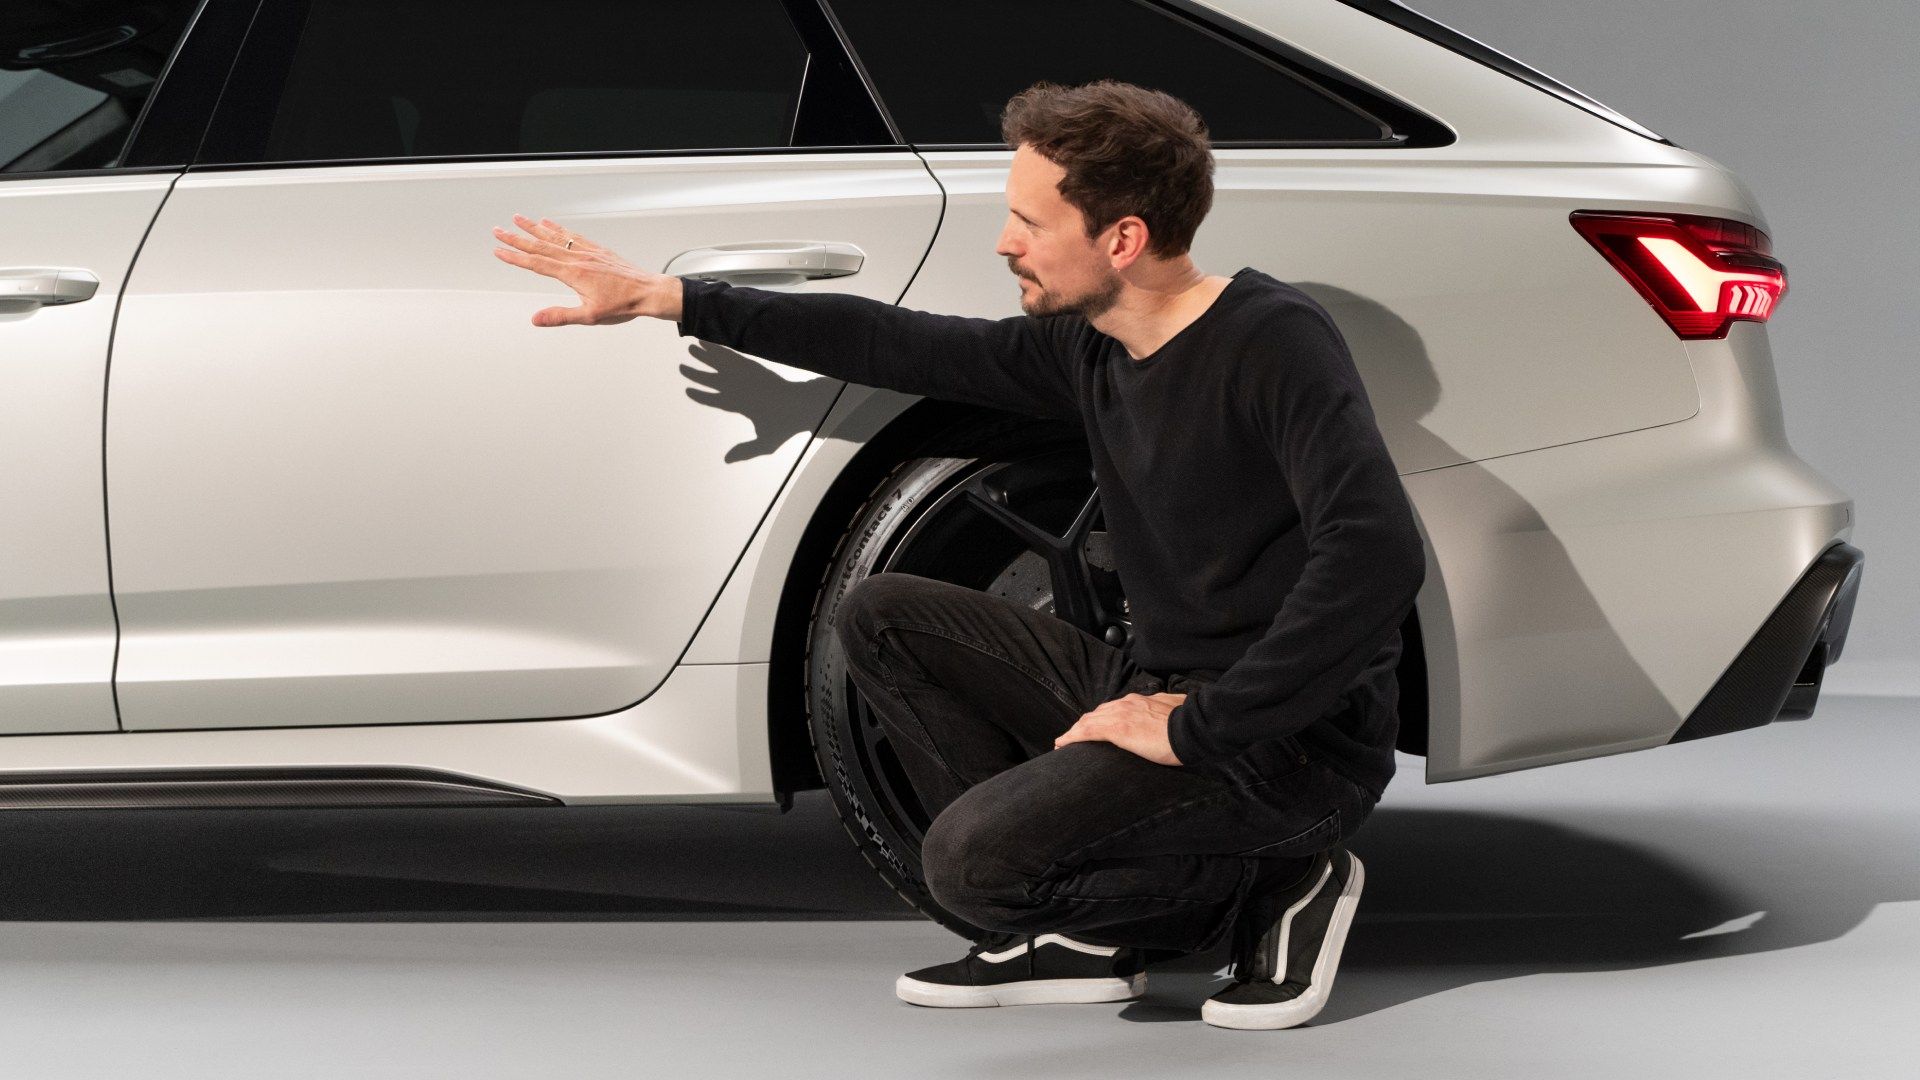 Markus Eberle hockt an der Seite des Audi RS 6 Avant performance und deutet mit der Hand auf die hintere Tür.